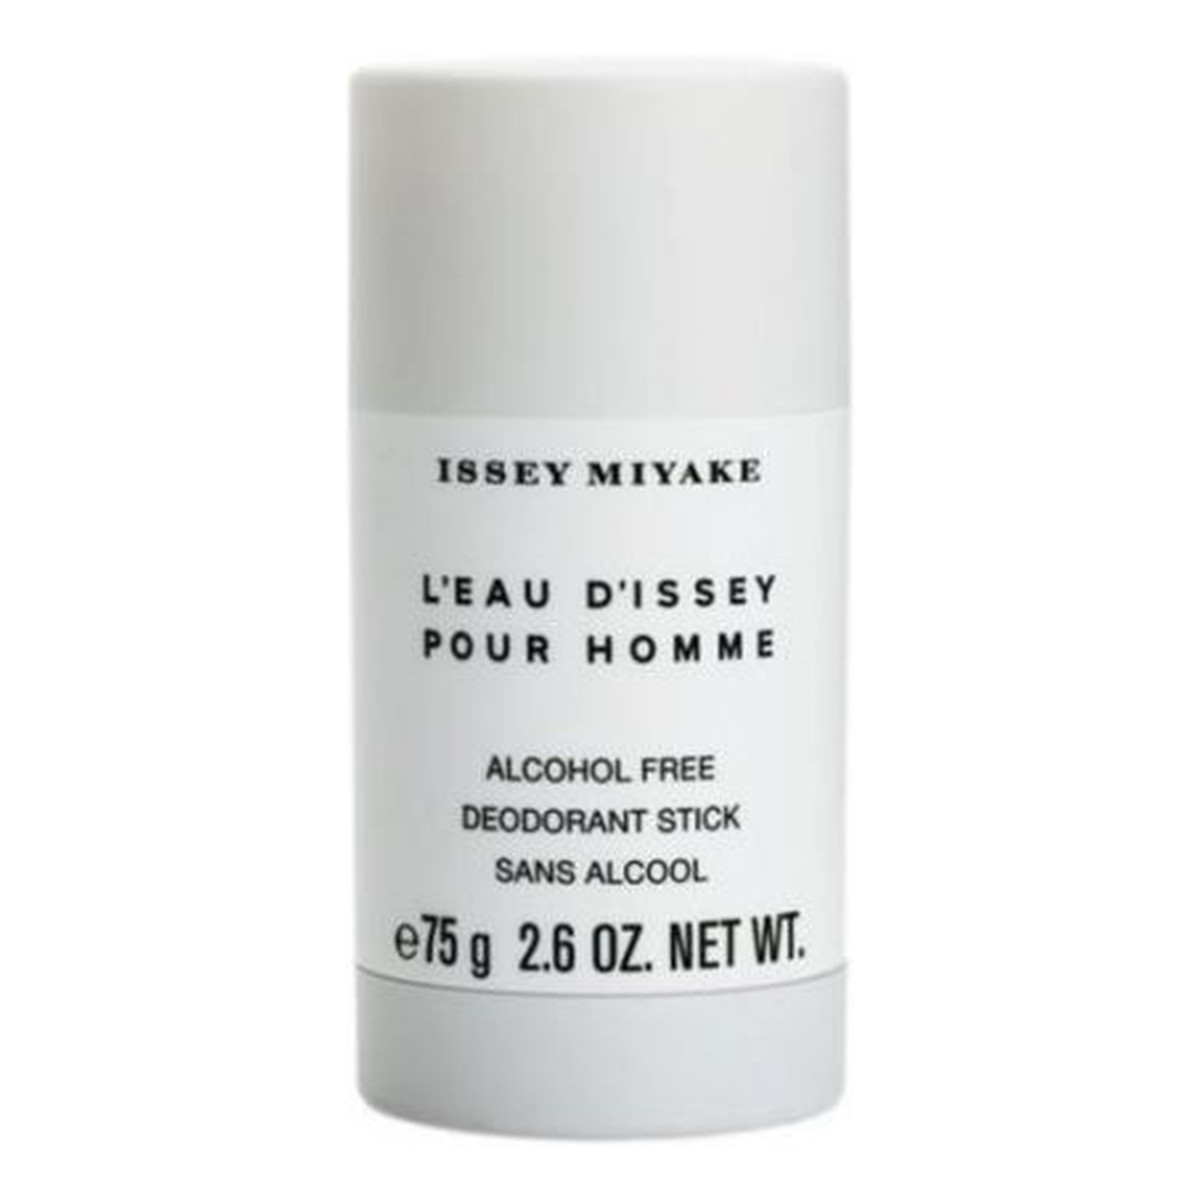 Issey Miyake L'Eau D'Issey Pour Homme dezodorant w sztyfcie dla mężczyzn 75g